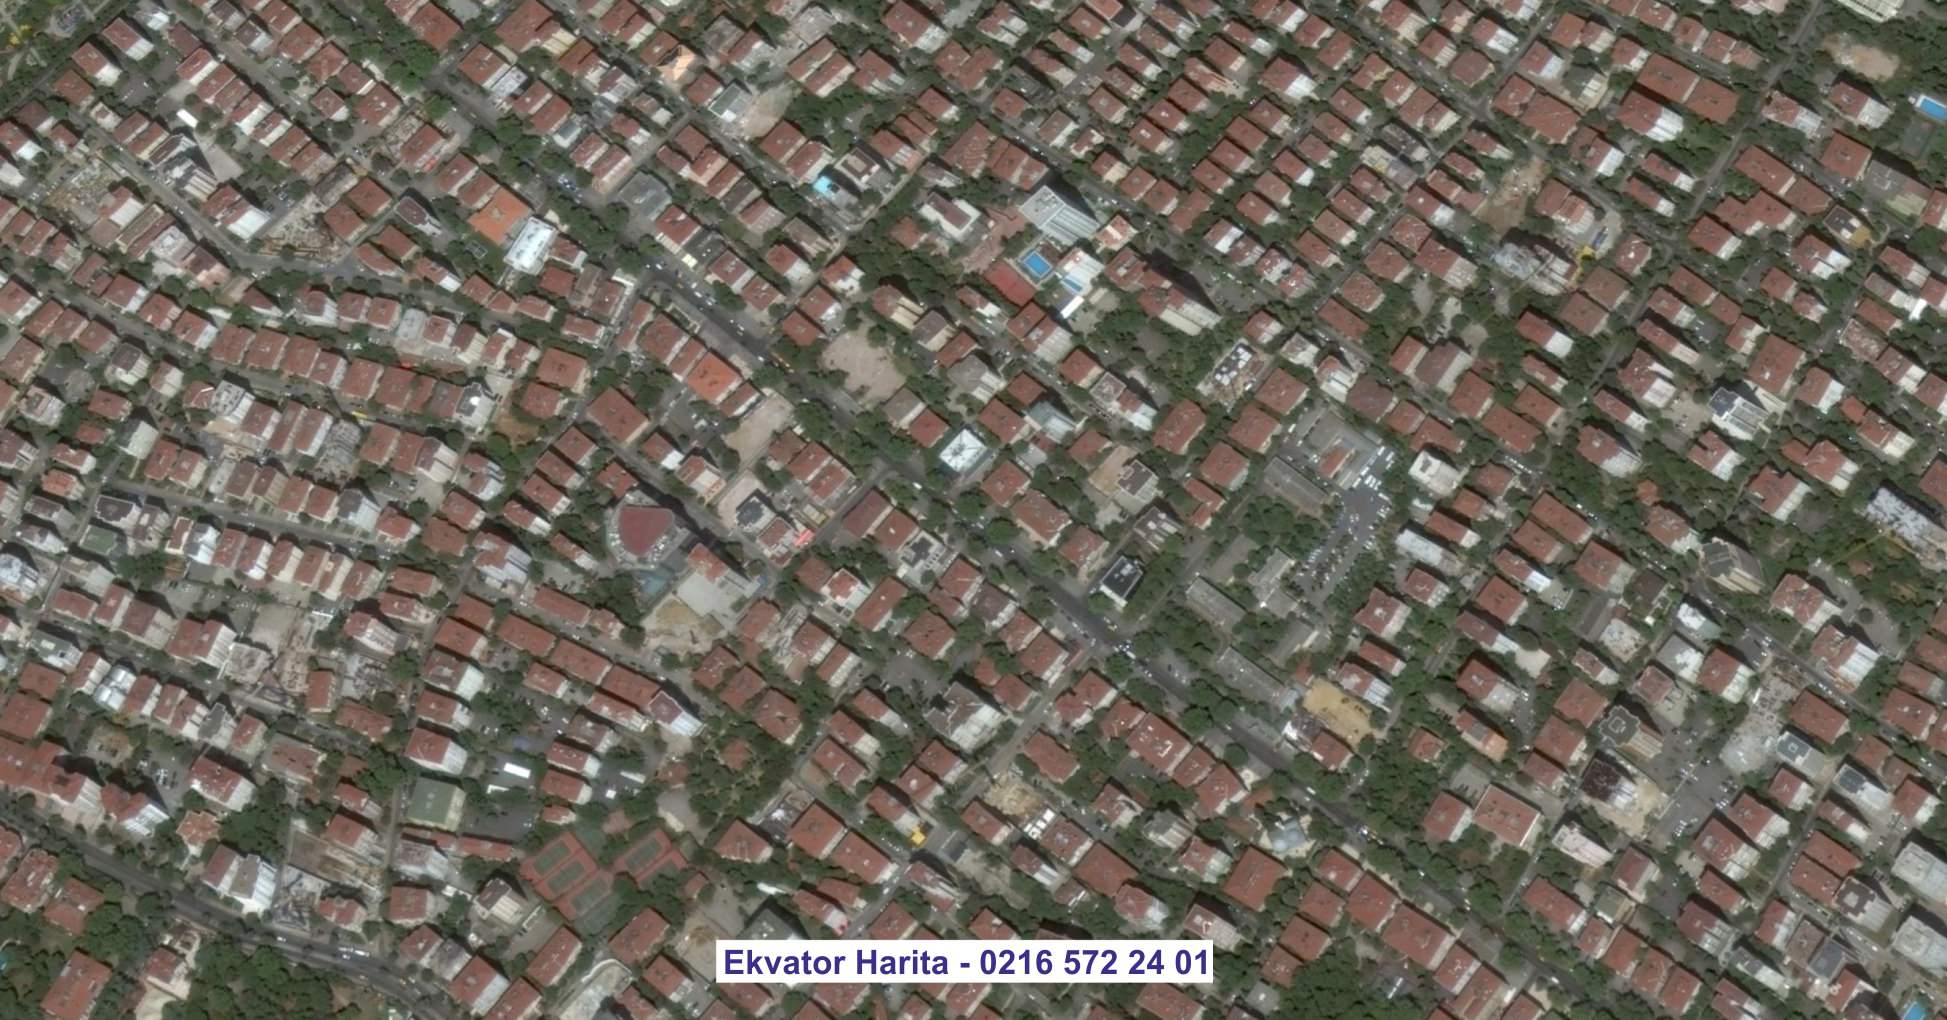 Bayrampaşa Uydu Görüntüsü Örnek Fotoğrafı